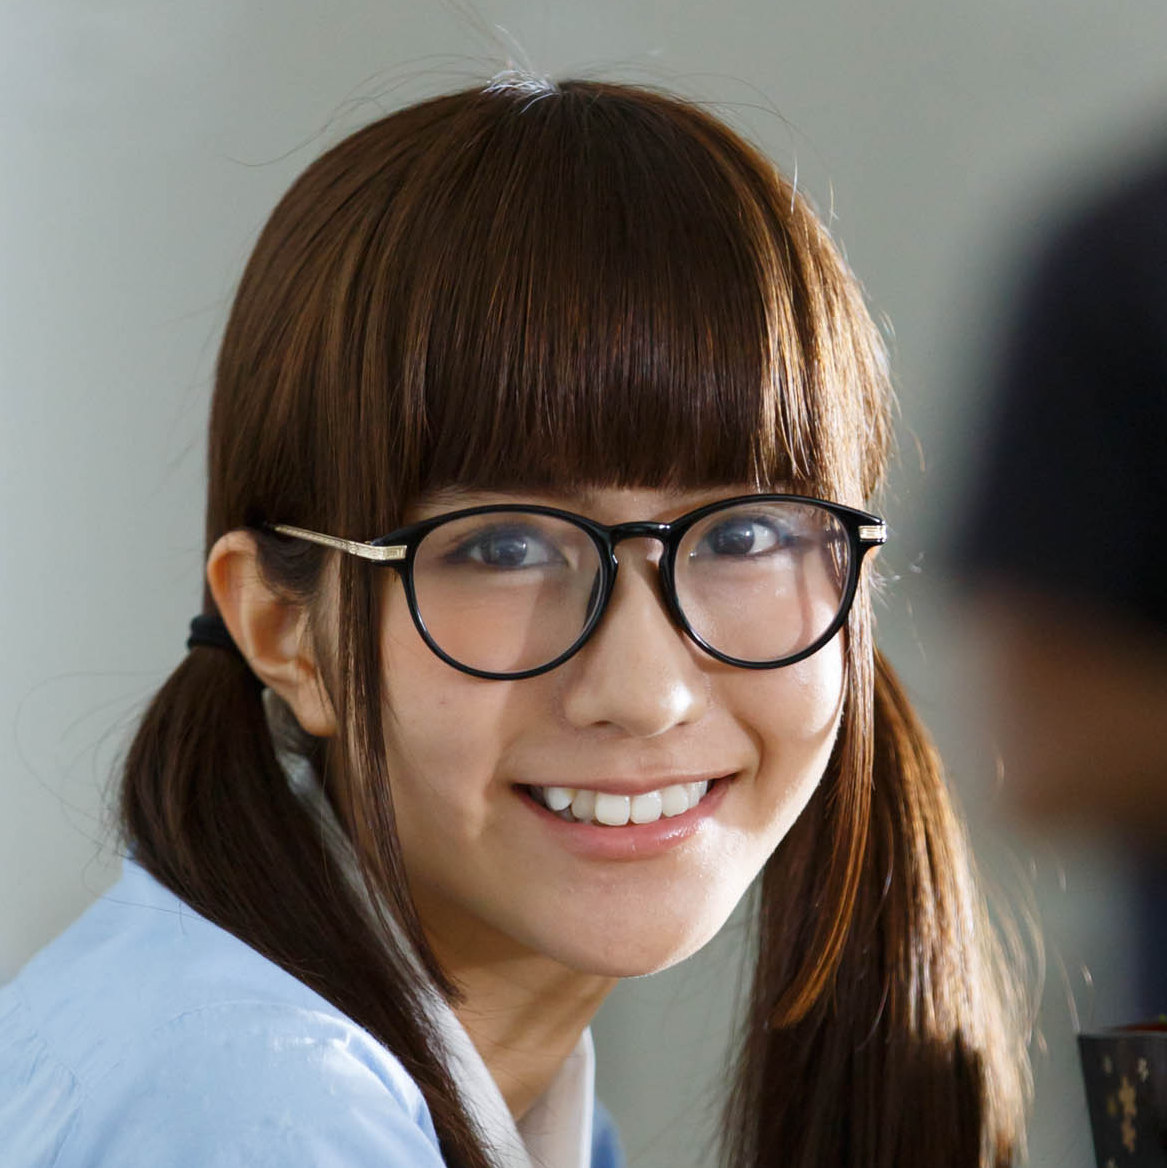 欅坂46・土生瑞穂さん<br />「初めてメガネをかけてみました！」<br /><br />